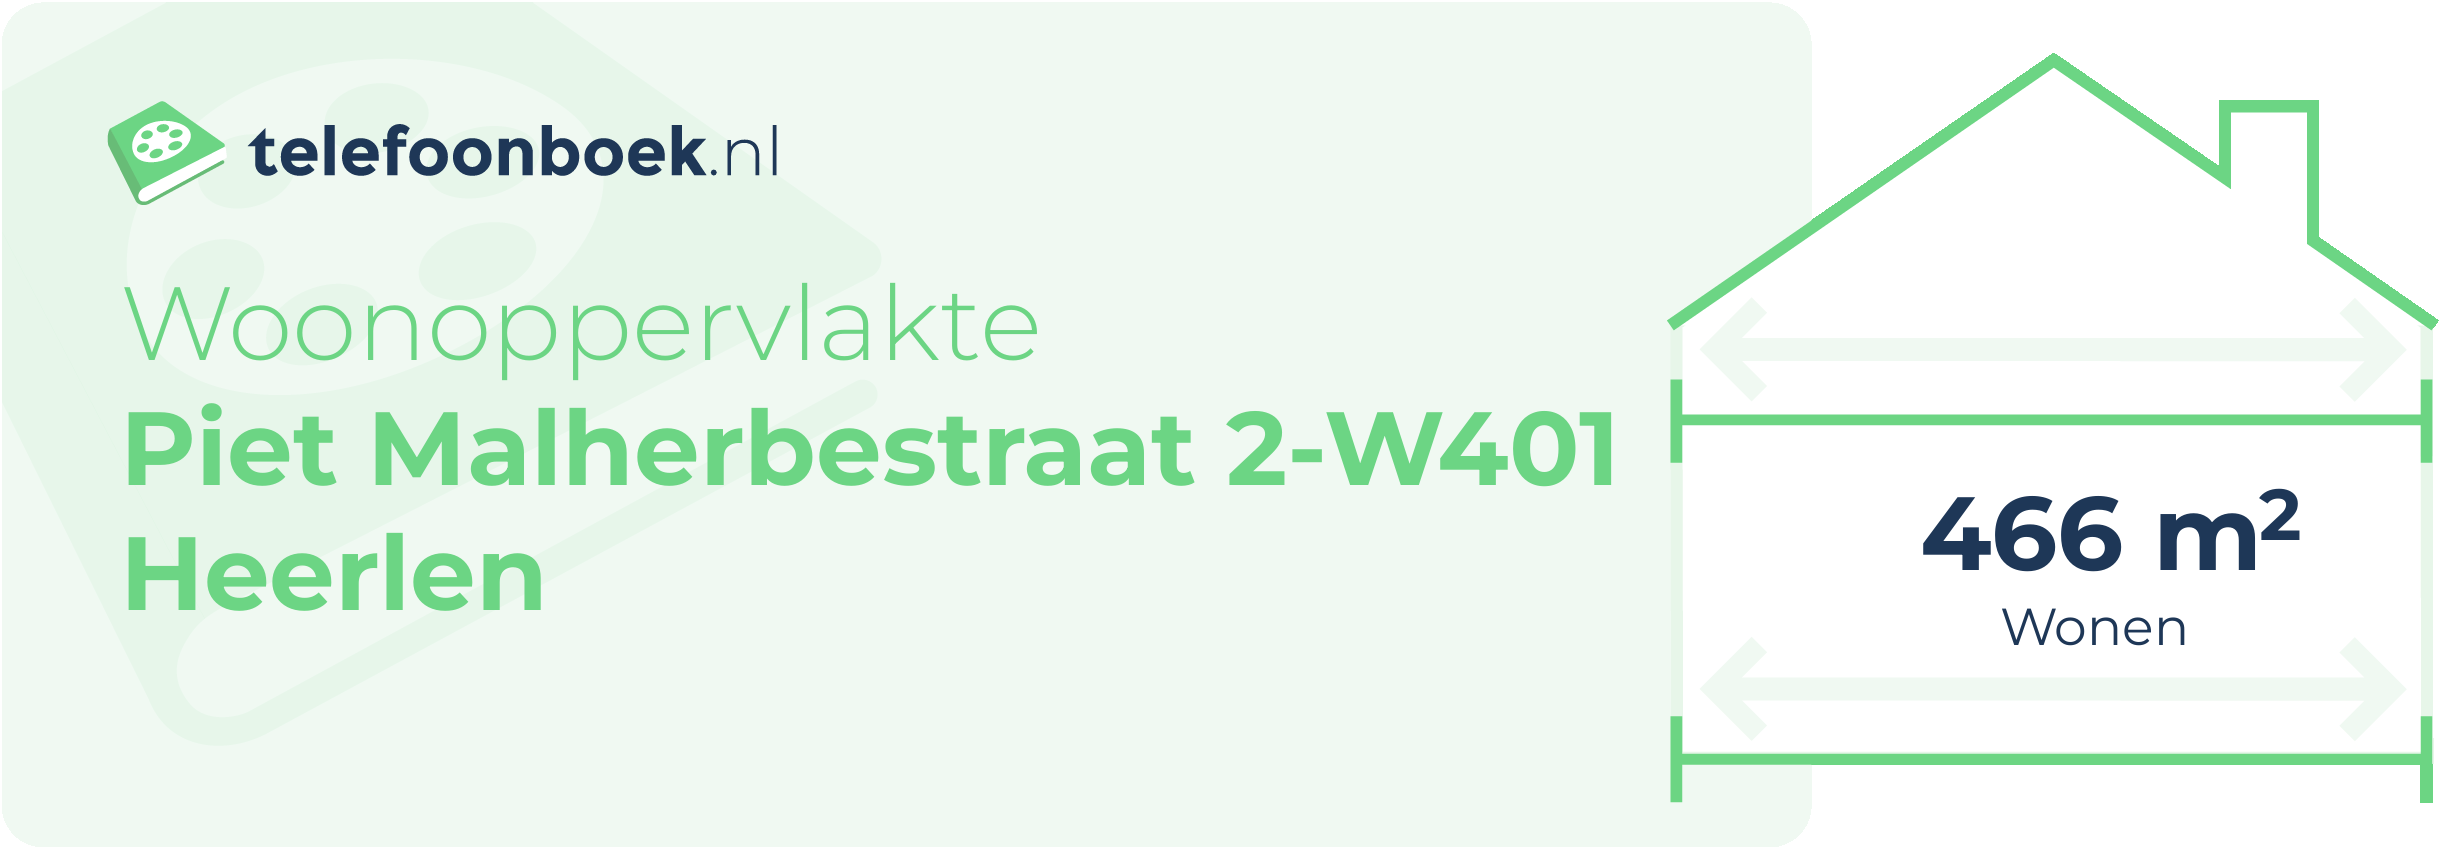 Woonoppervlakte Piet Malherbestraat 2-W401 Heerlen